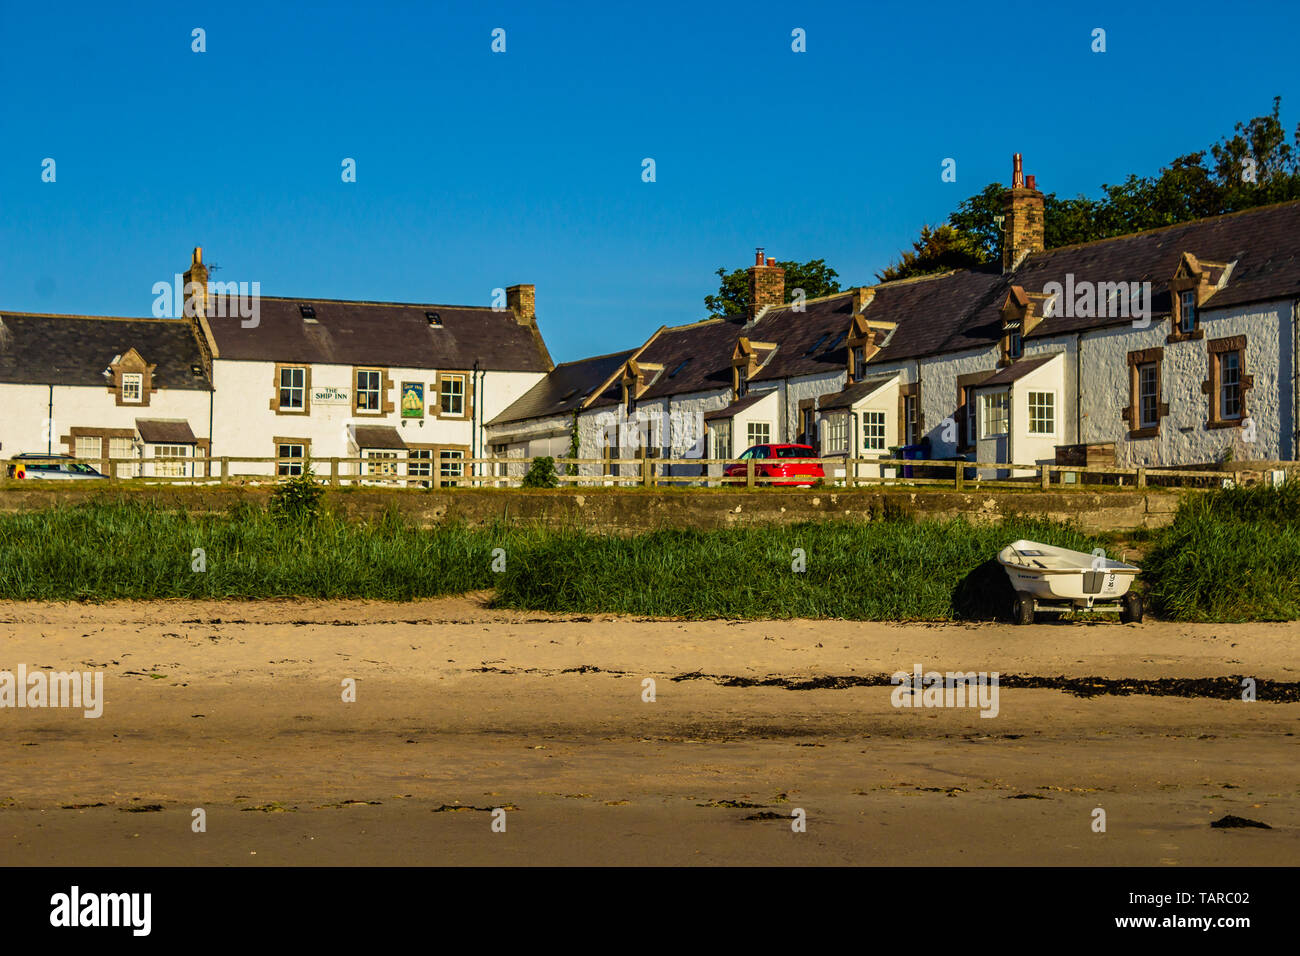 Dorf an der Küste von Newton-by-the-Sea mit Pub The Ship Inn in der Ecke der Dorfplatz. Northumberland, Großbritannien. Sommer 2018. Stockfoto